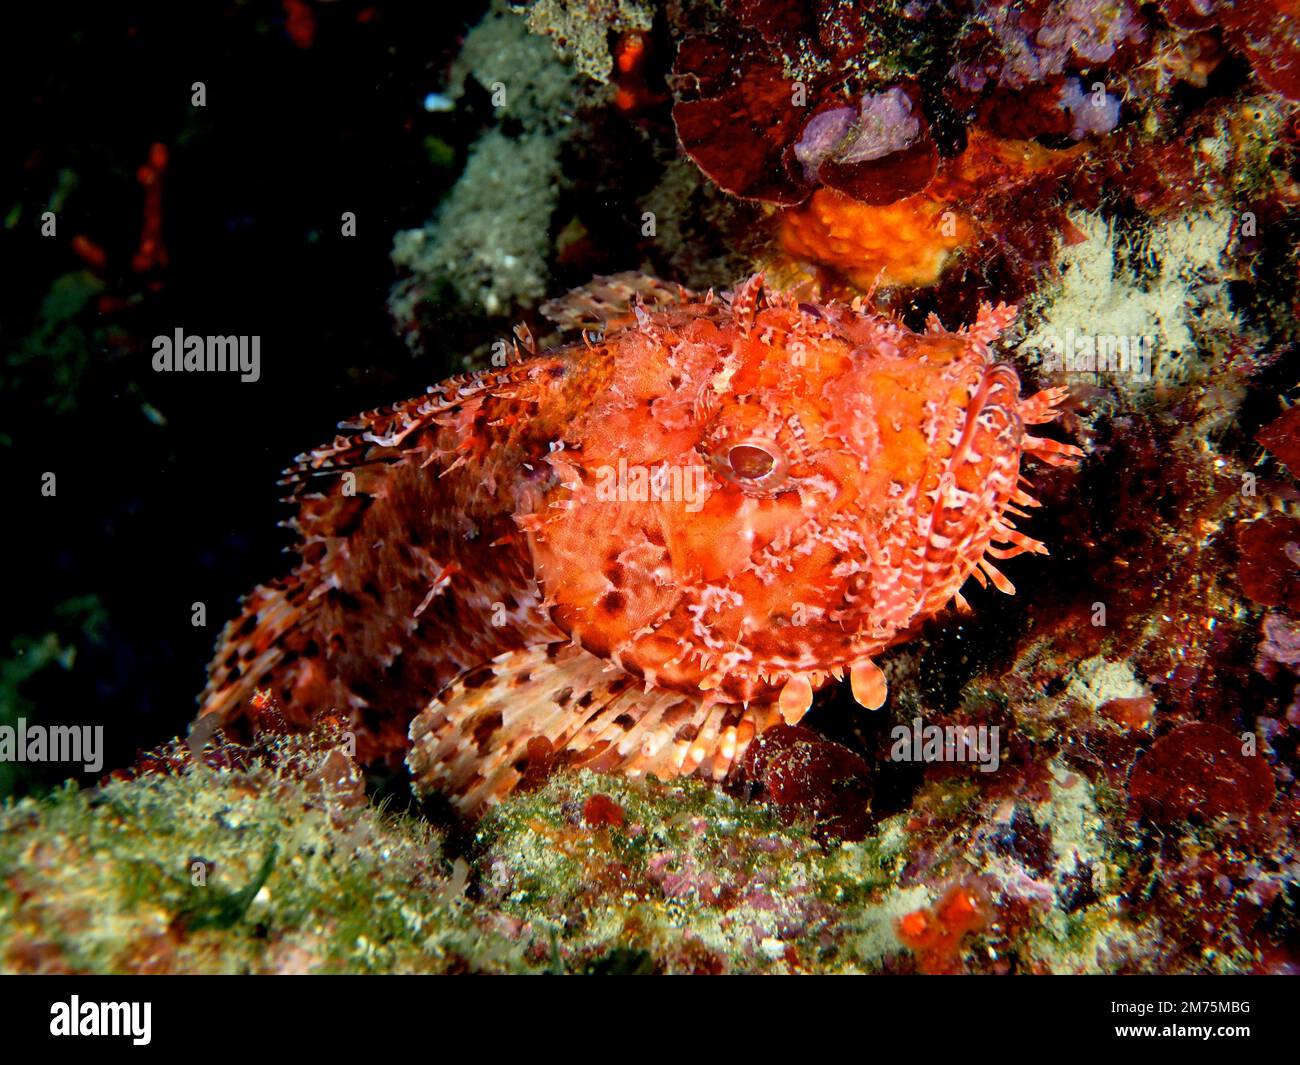 Scorfano rosso (Scorpaena scrofa), scrofa di mare. Sito di immersione Los Cancajos, la Palma, Isole Canarie, Spagna, Oceano Atlantico Foto Stock